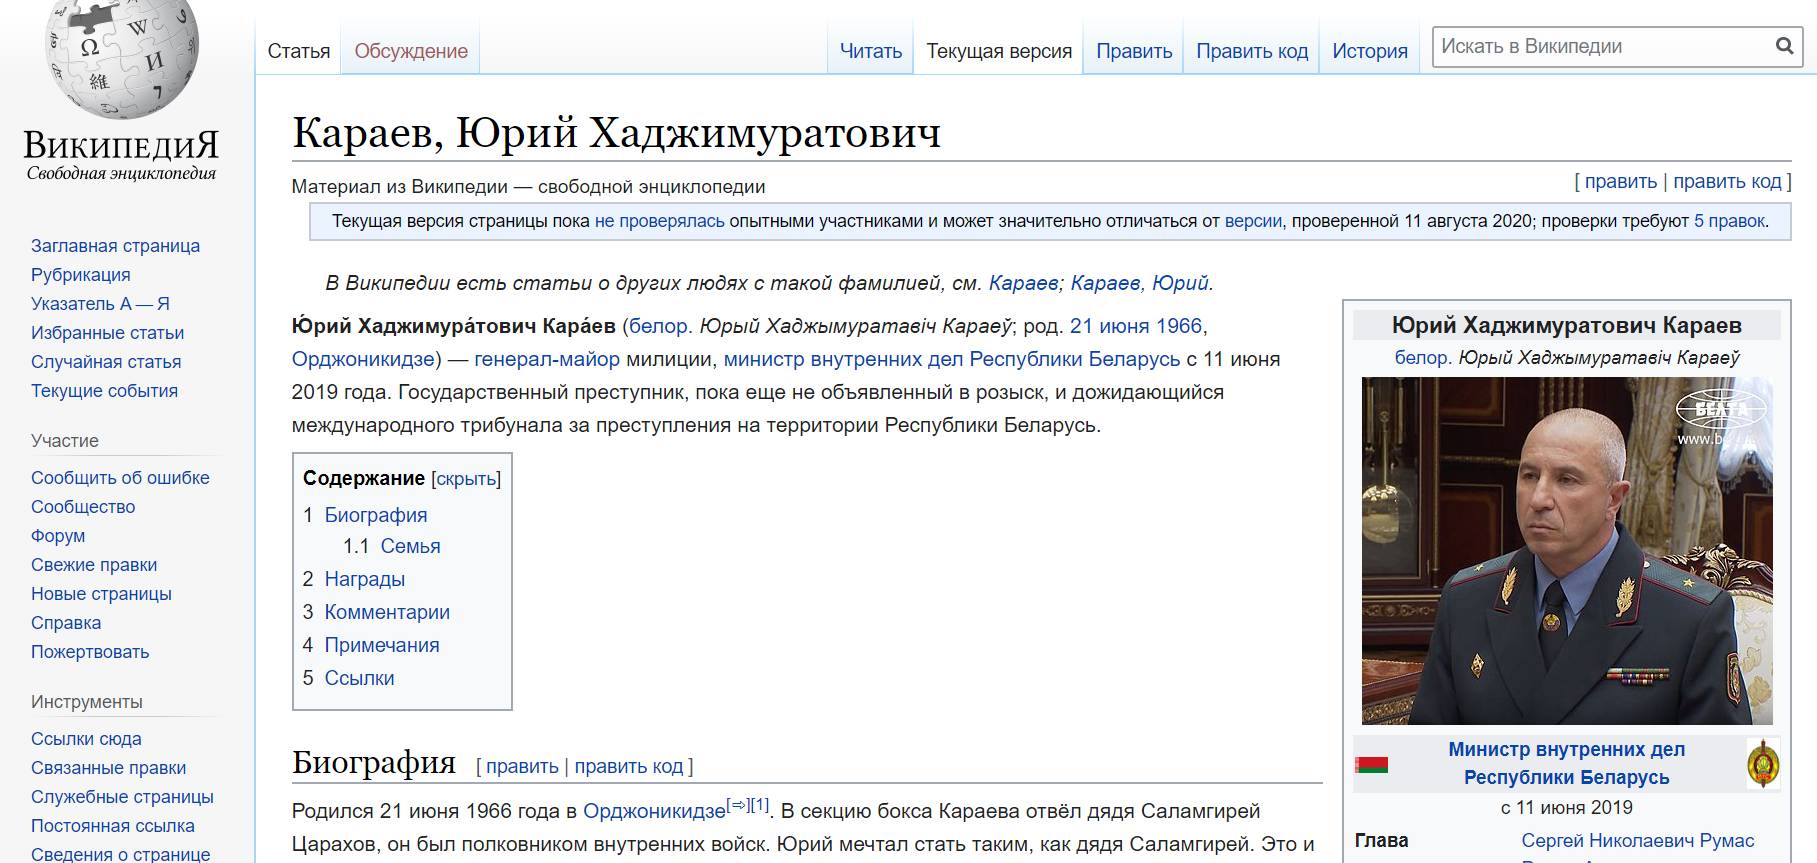 Скриншот страницы интернет-энциклопедии Википедия